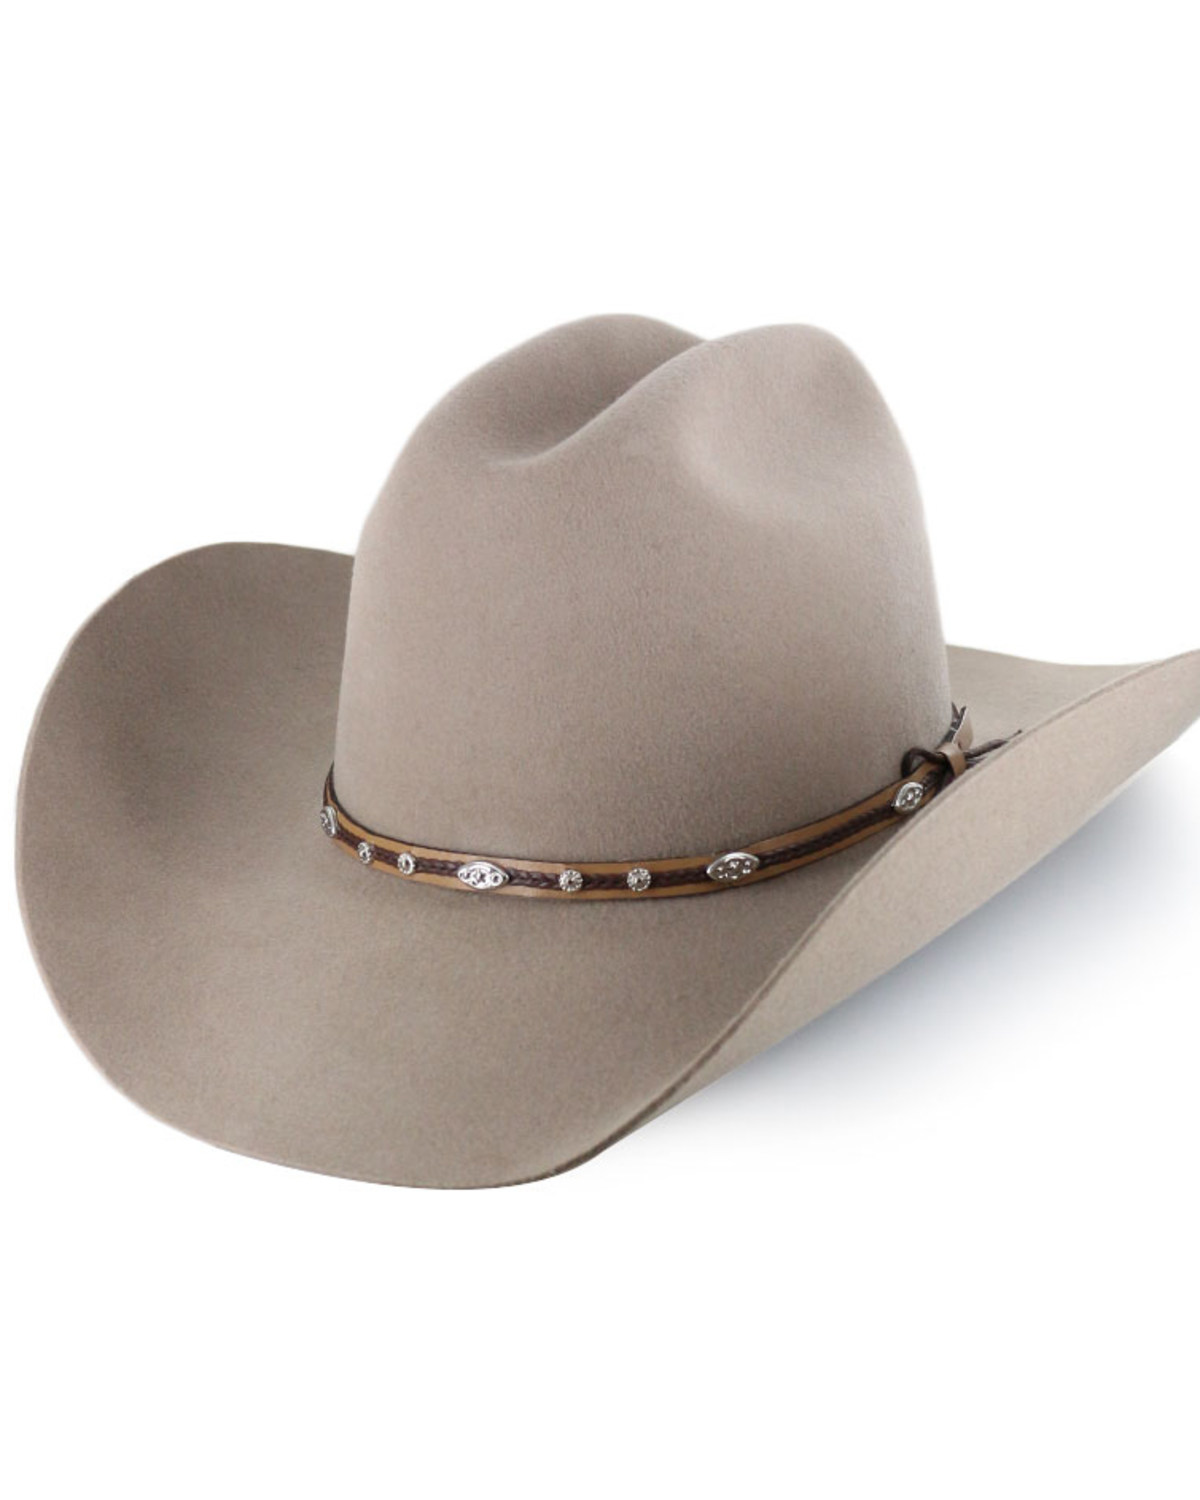 Cody James Denton 3X Felt Cowboy Hat